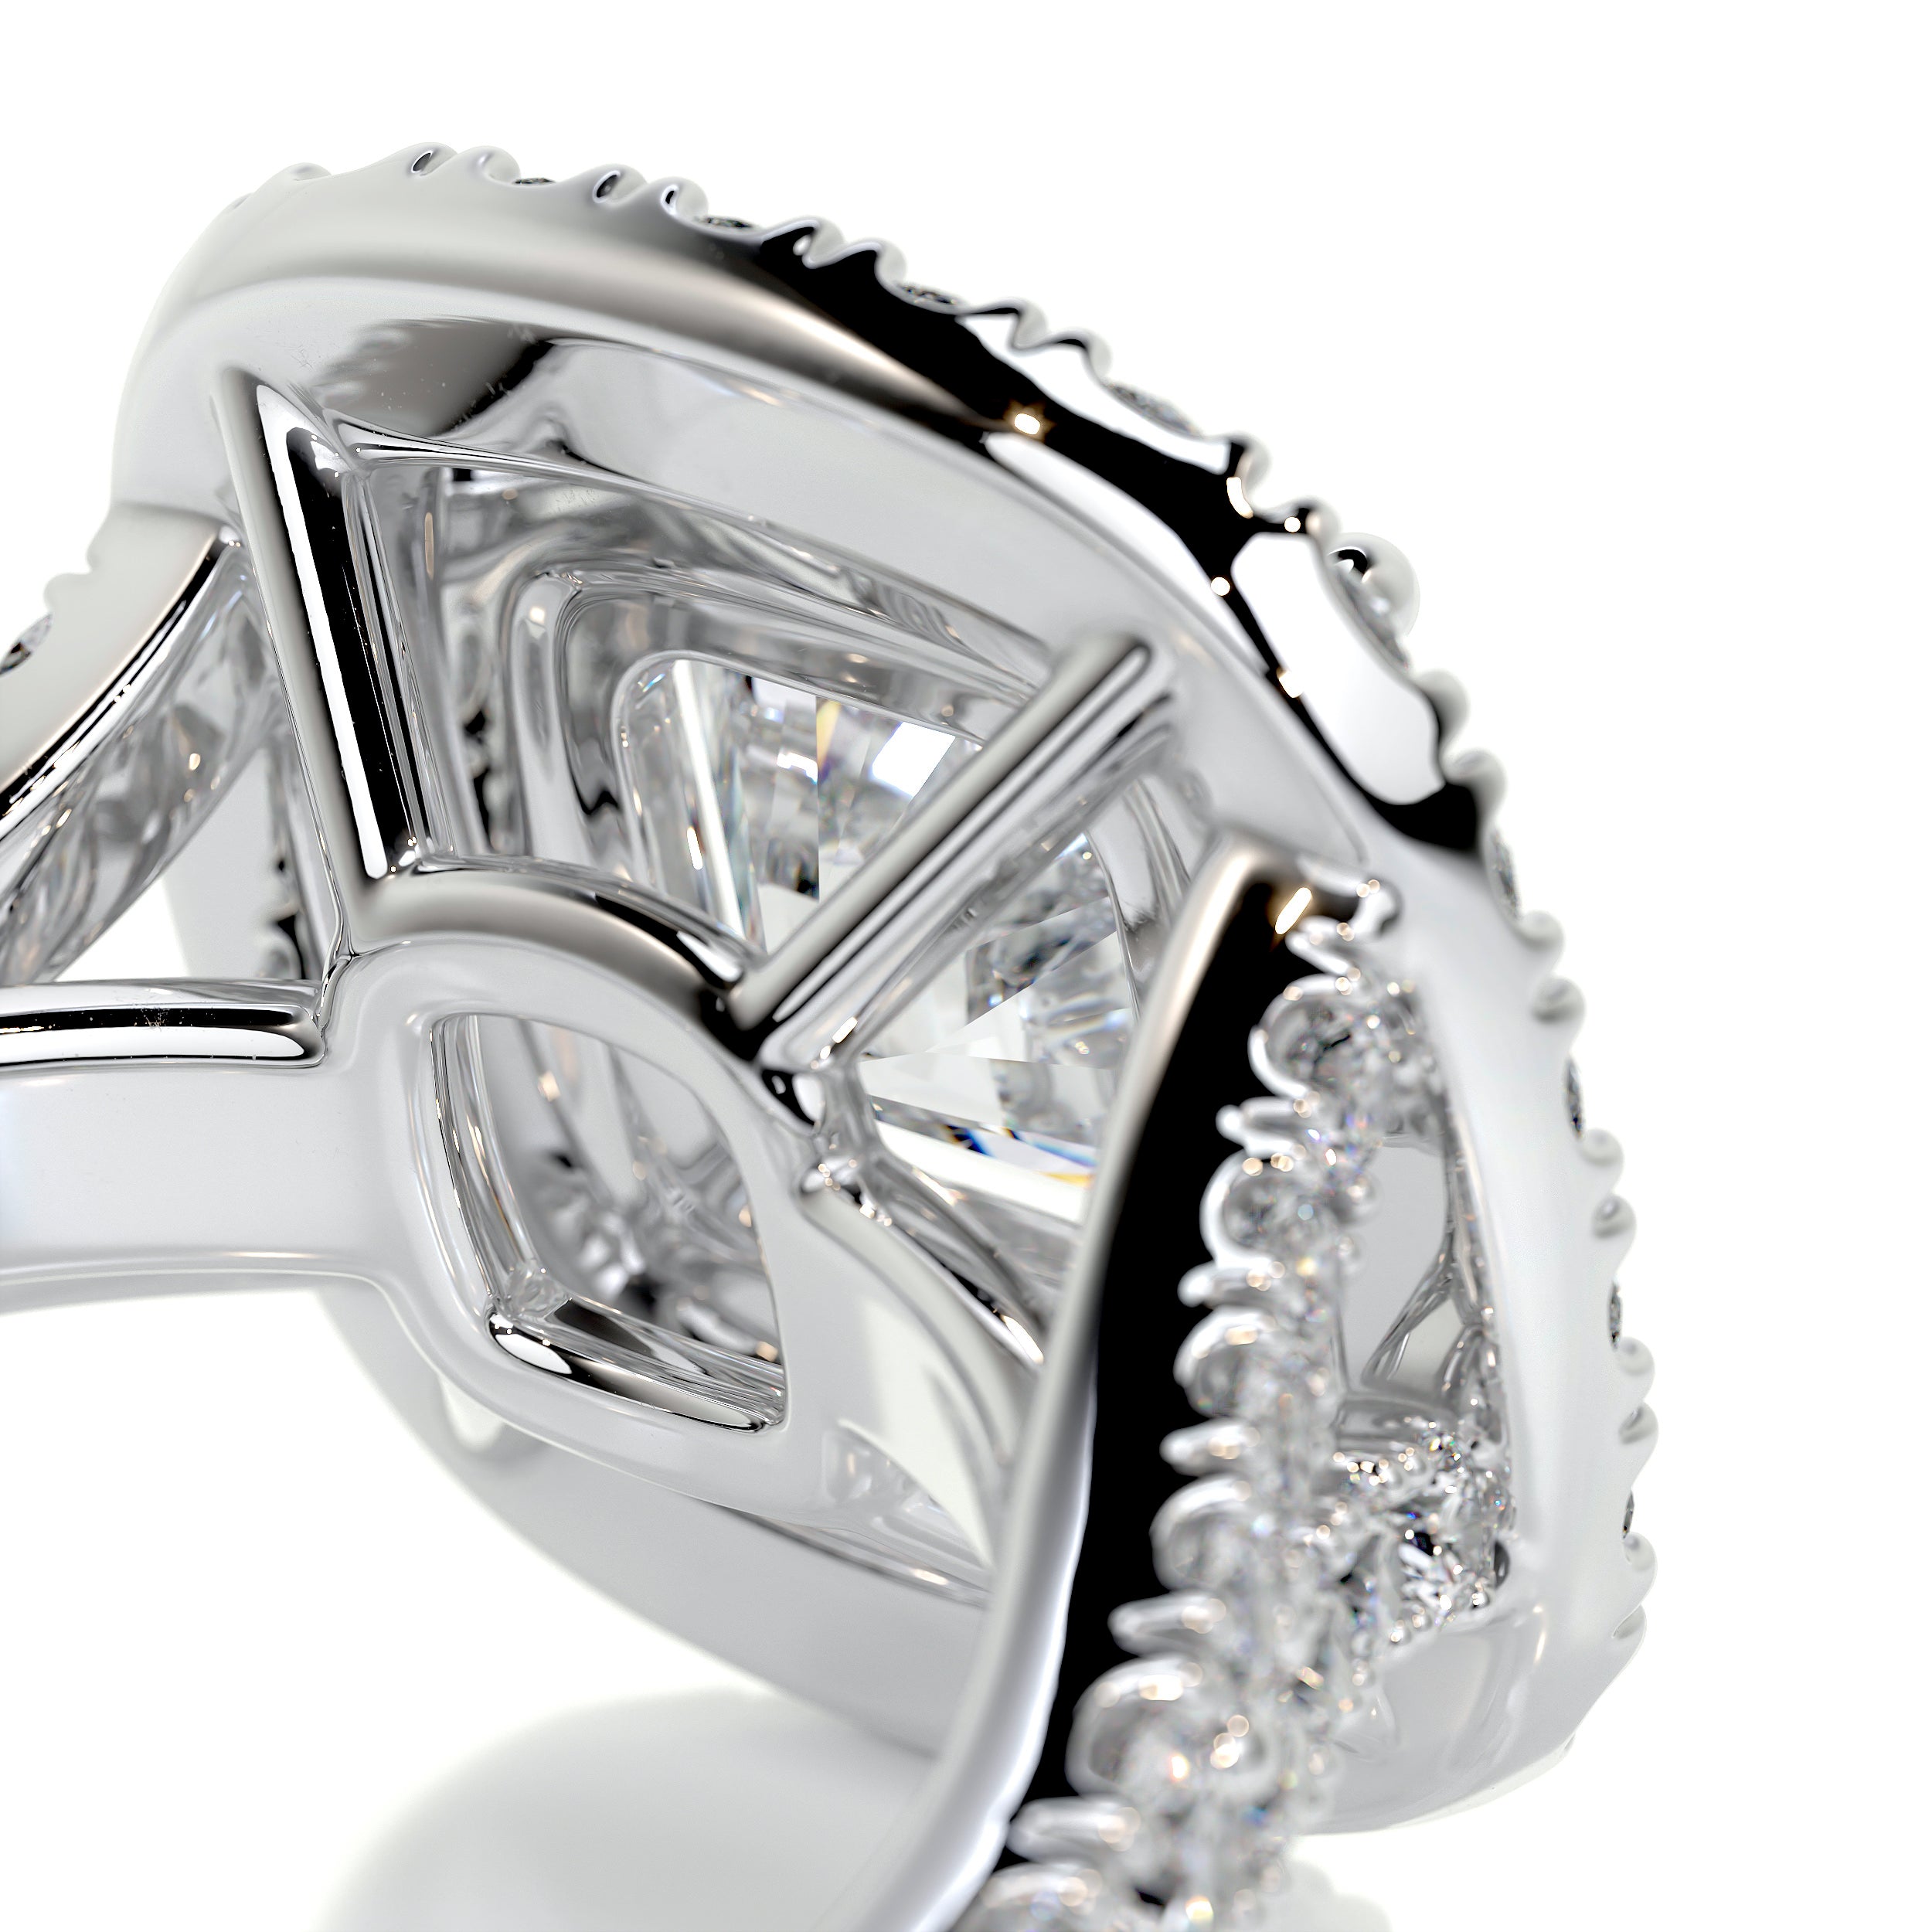 Tina Diamond Engagement Ring   (2.5 Carat) -Platinum